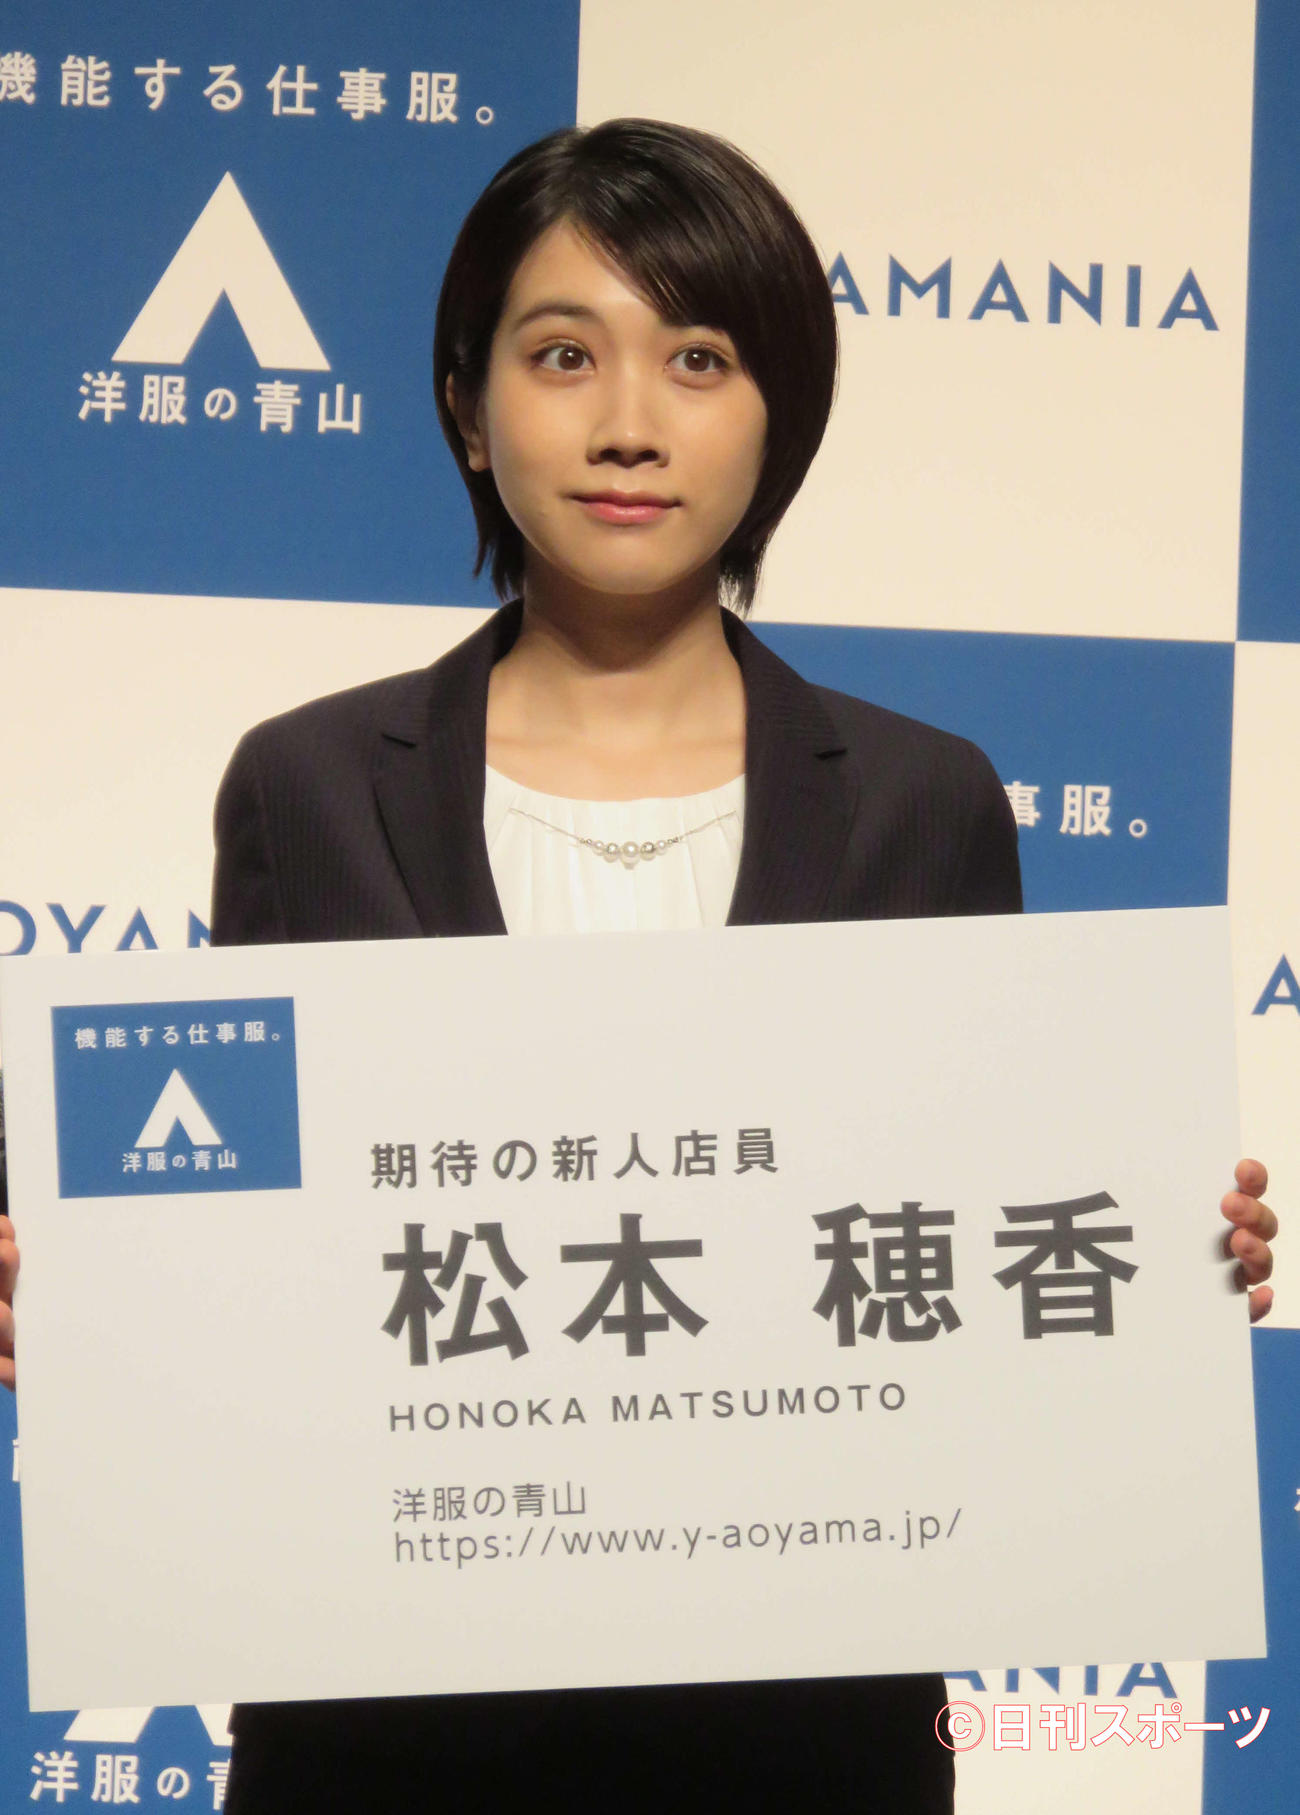 洋服の青山の新CMシリーズ「AOYAMANIA」発表会に出席した松本穂香